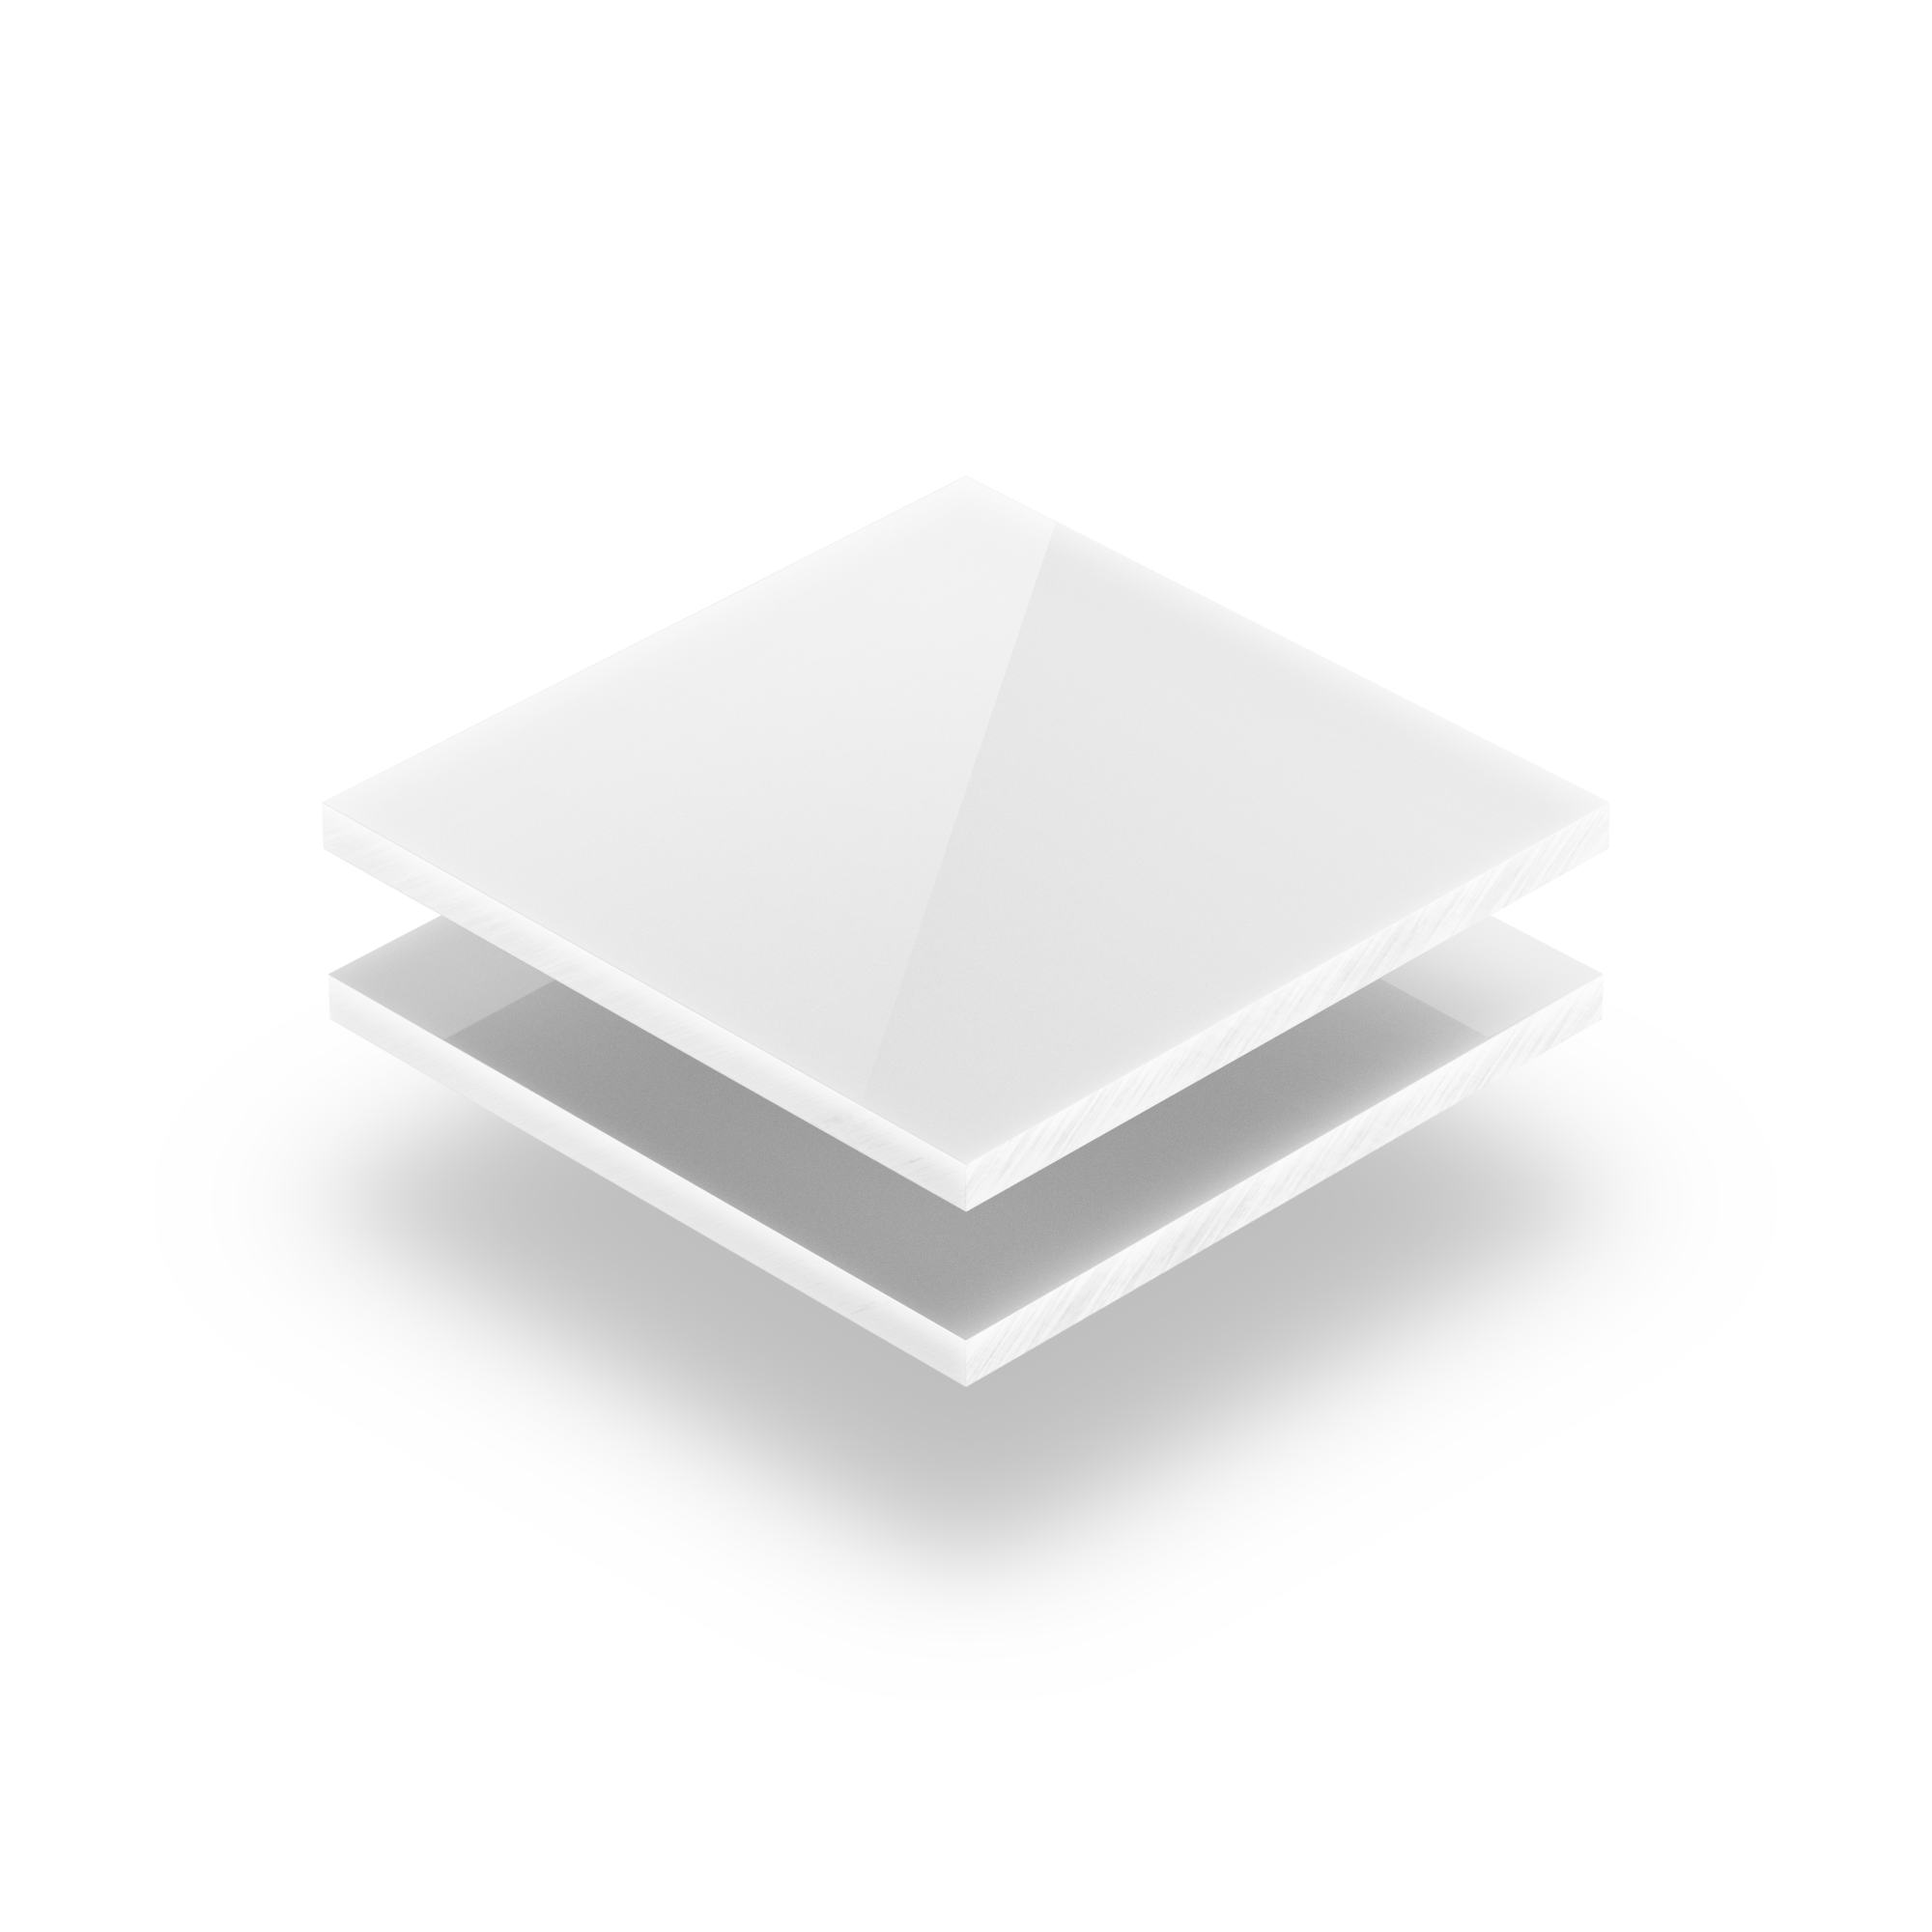 PVC Massiv Platte 550 x 370 x 3 mm Weiß 